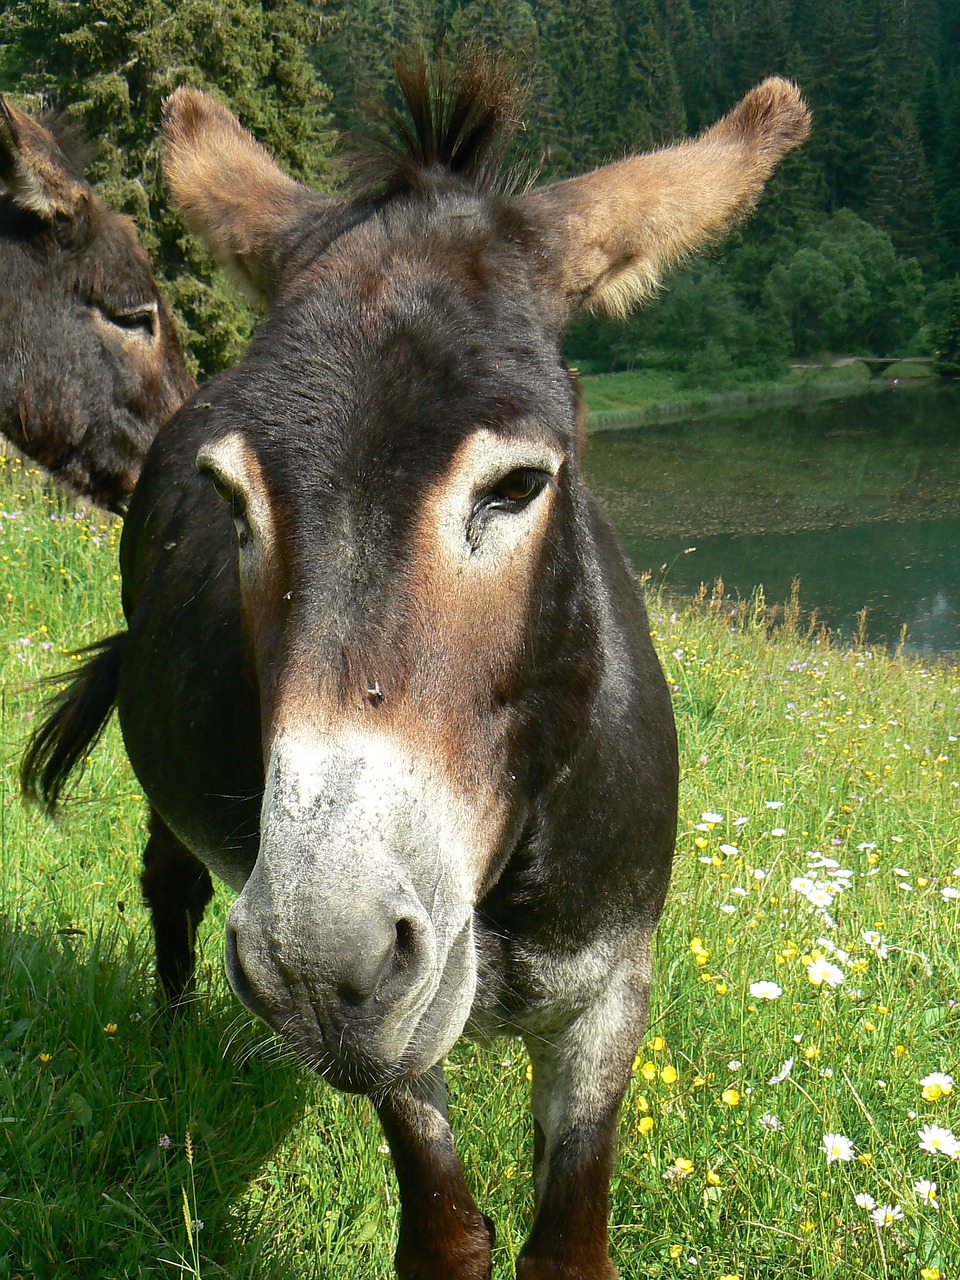 ane animal donkey free photo